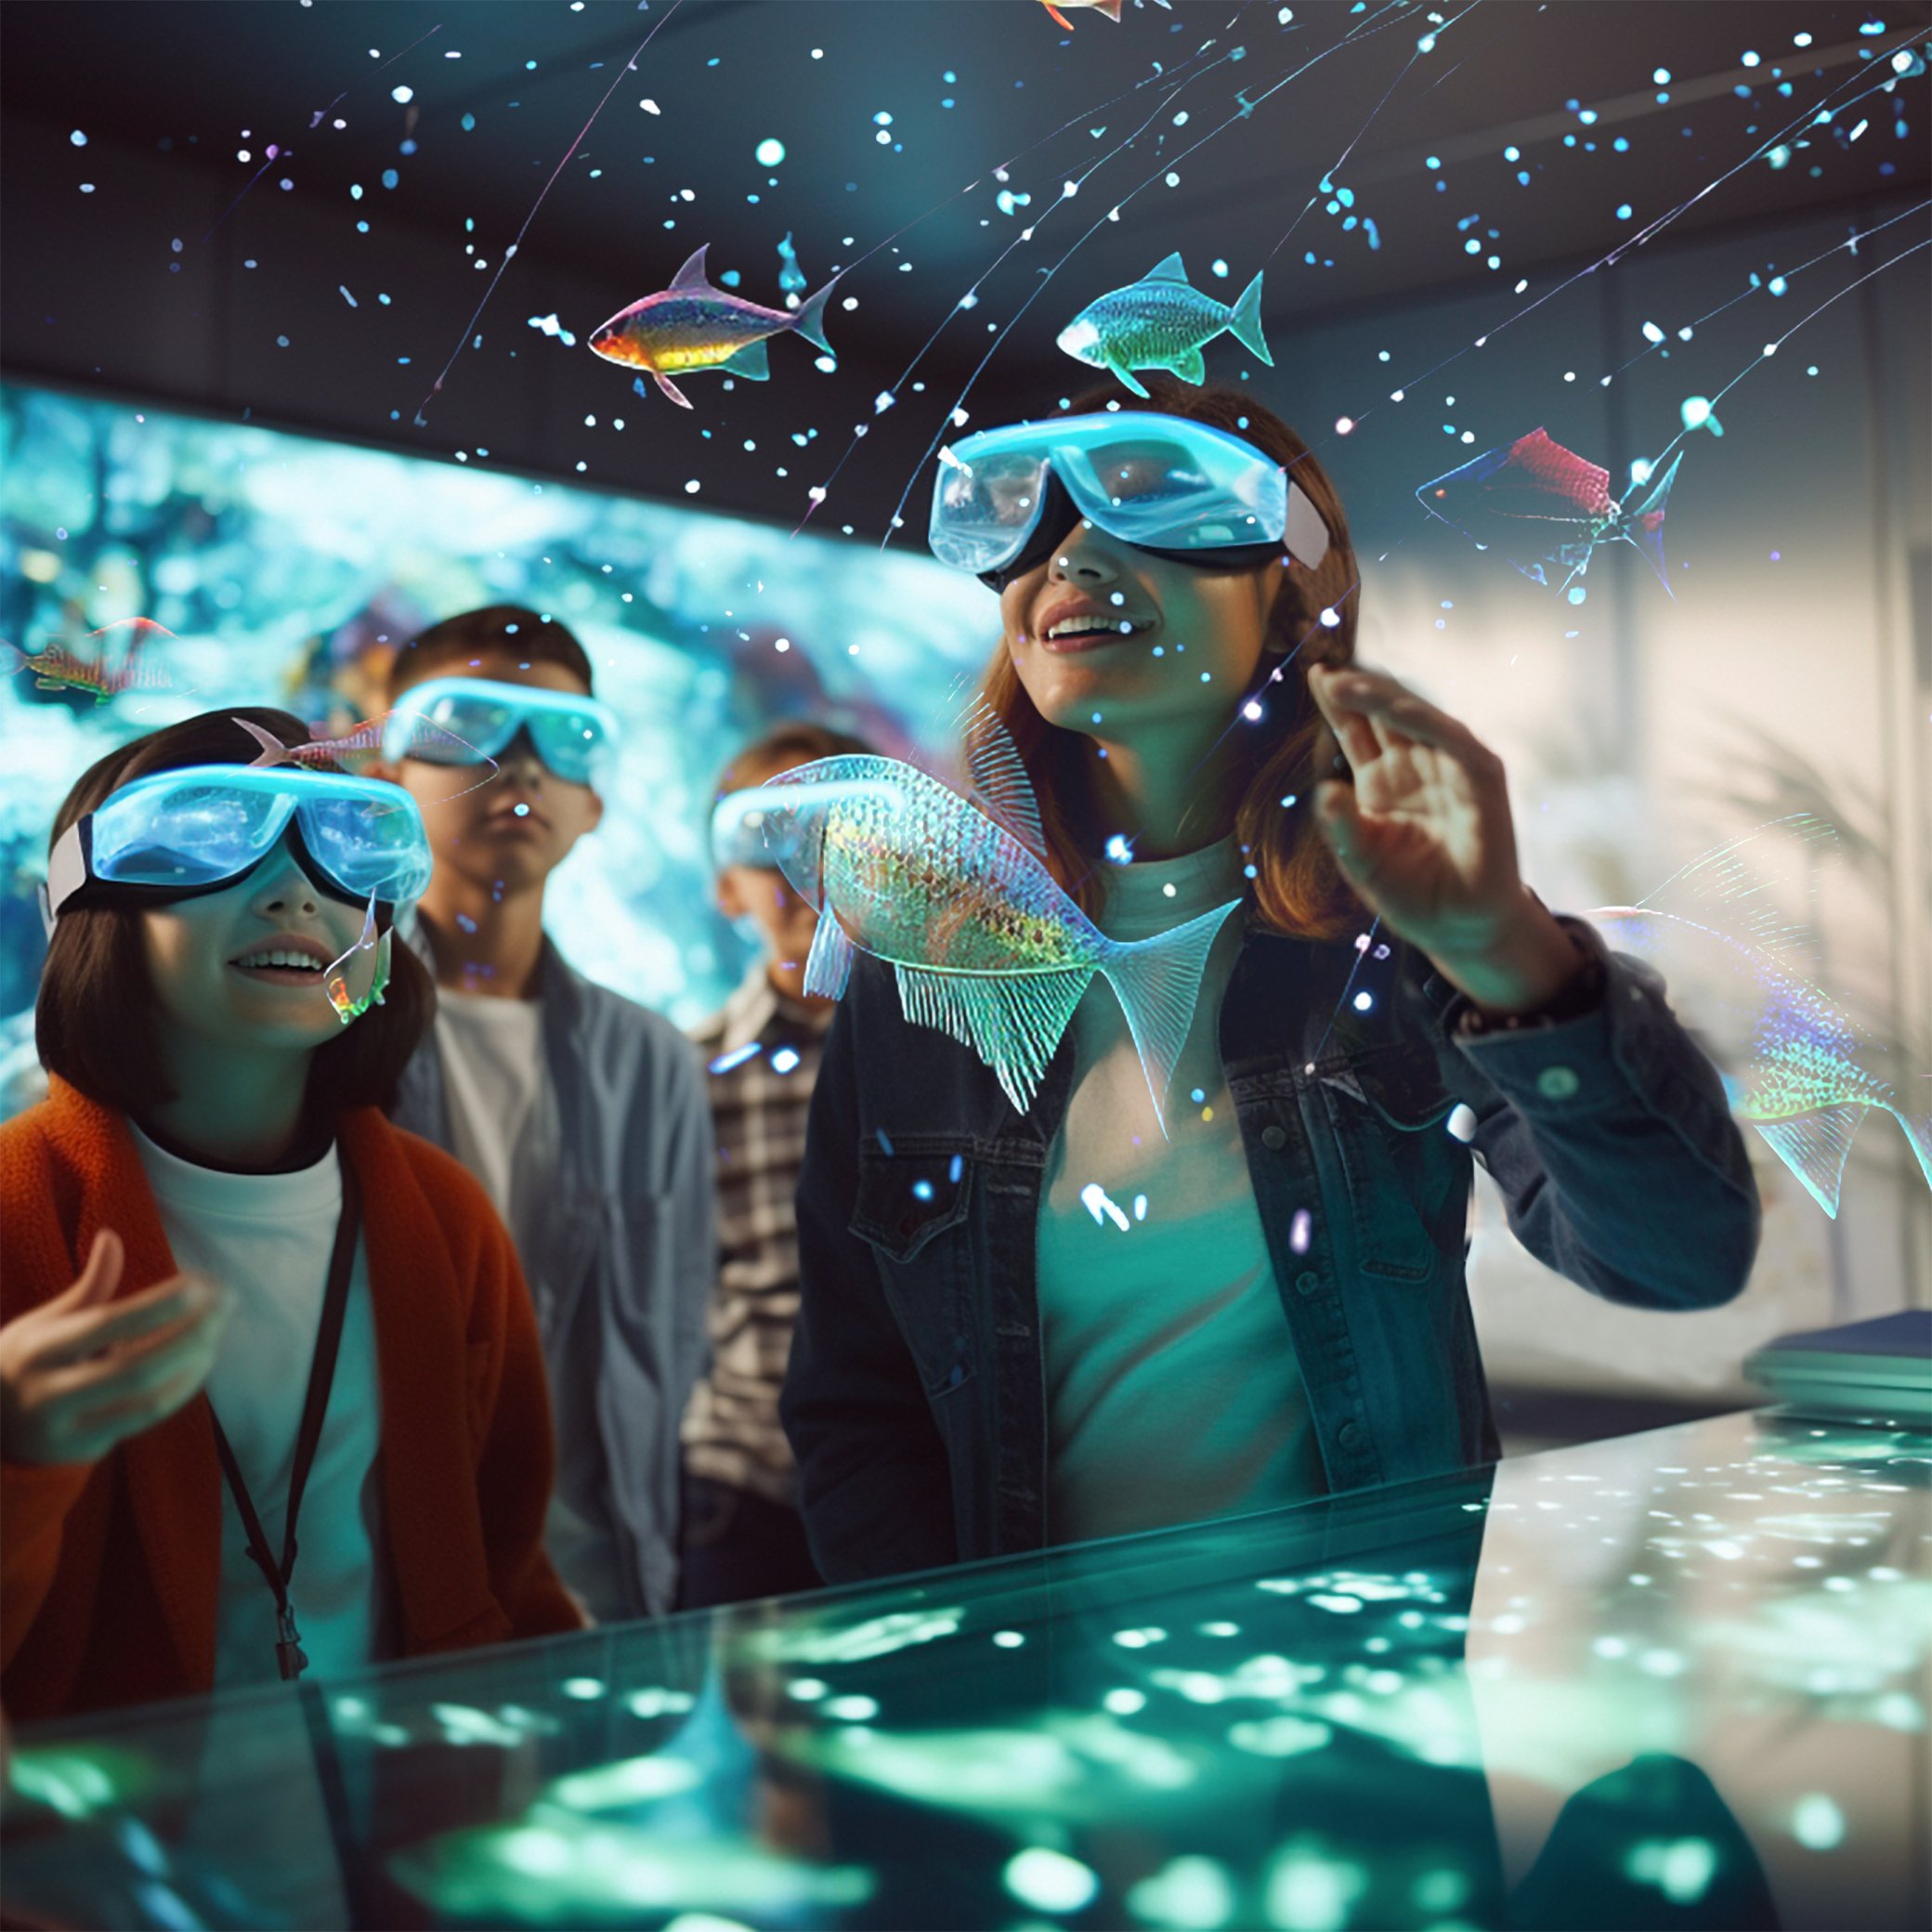 ИЗОБРАЖЕНИЕ, Сгенерированное искусственным интеллектом. Дети в очках виртуальной реальности смотрят на рыб, плавающих в космосе.